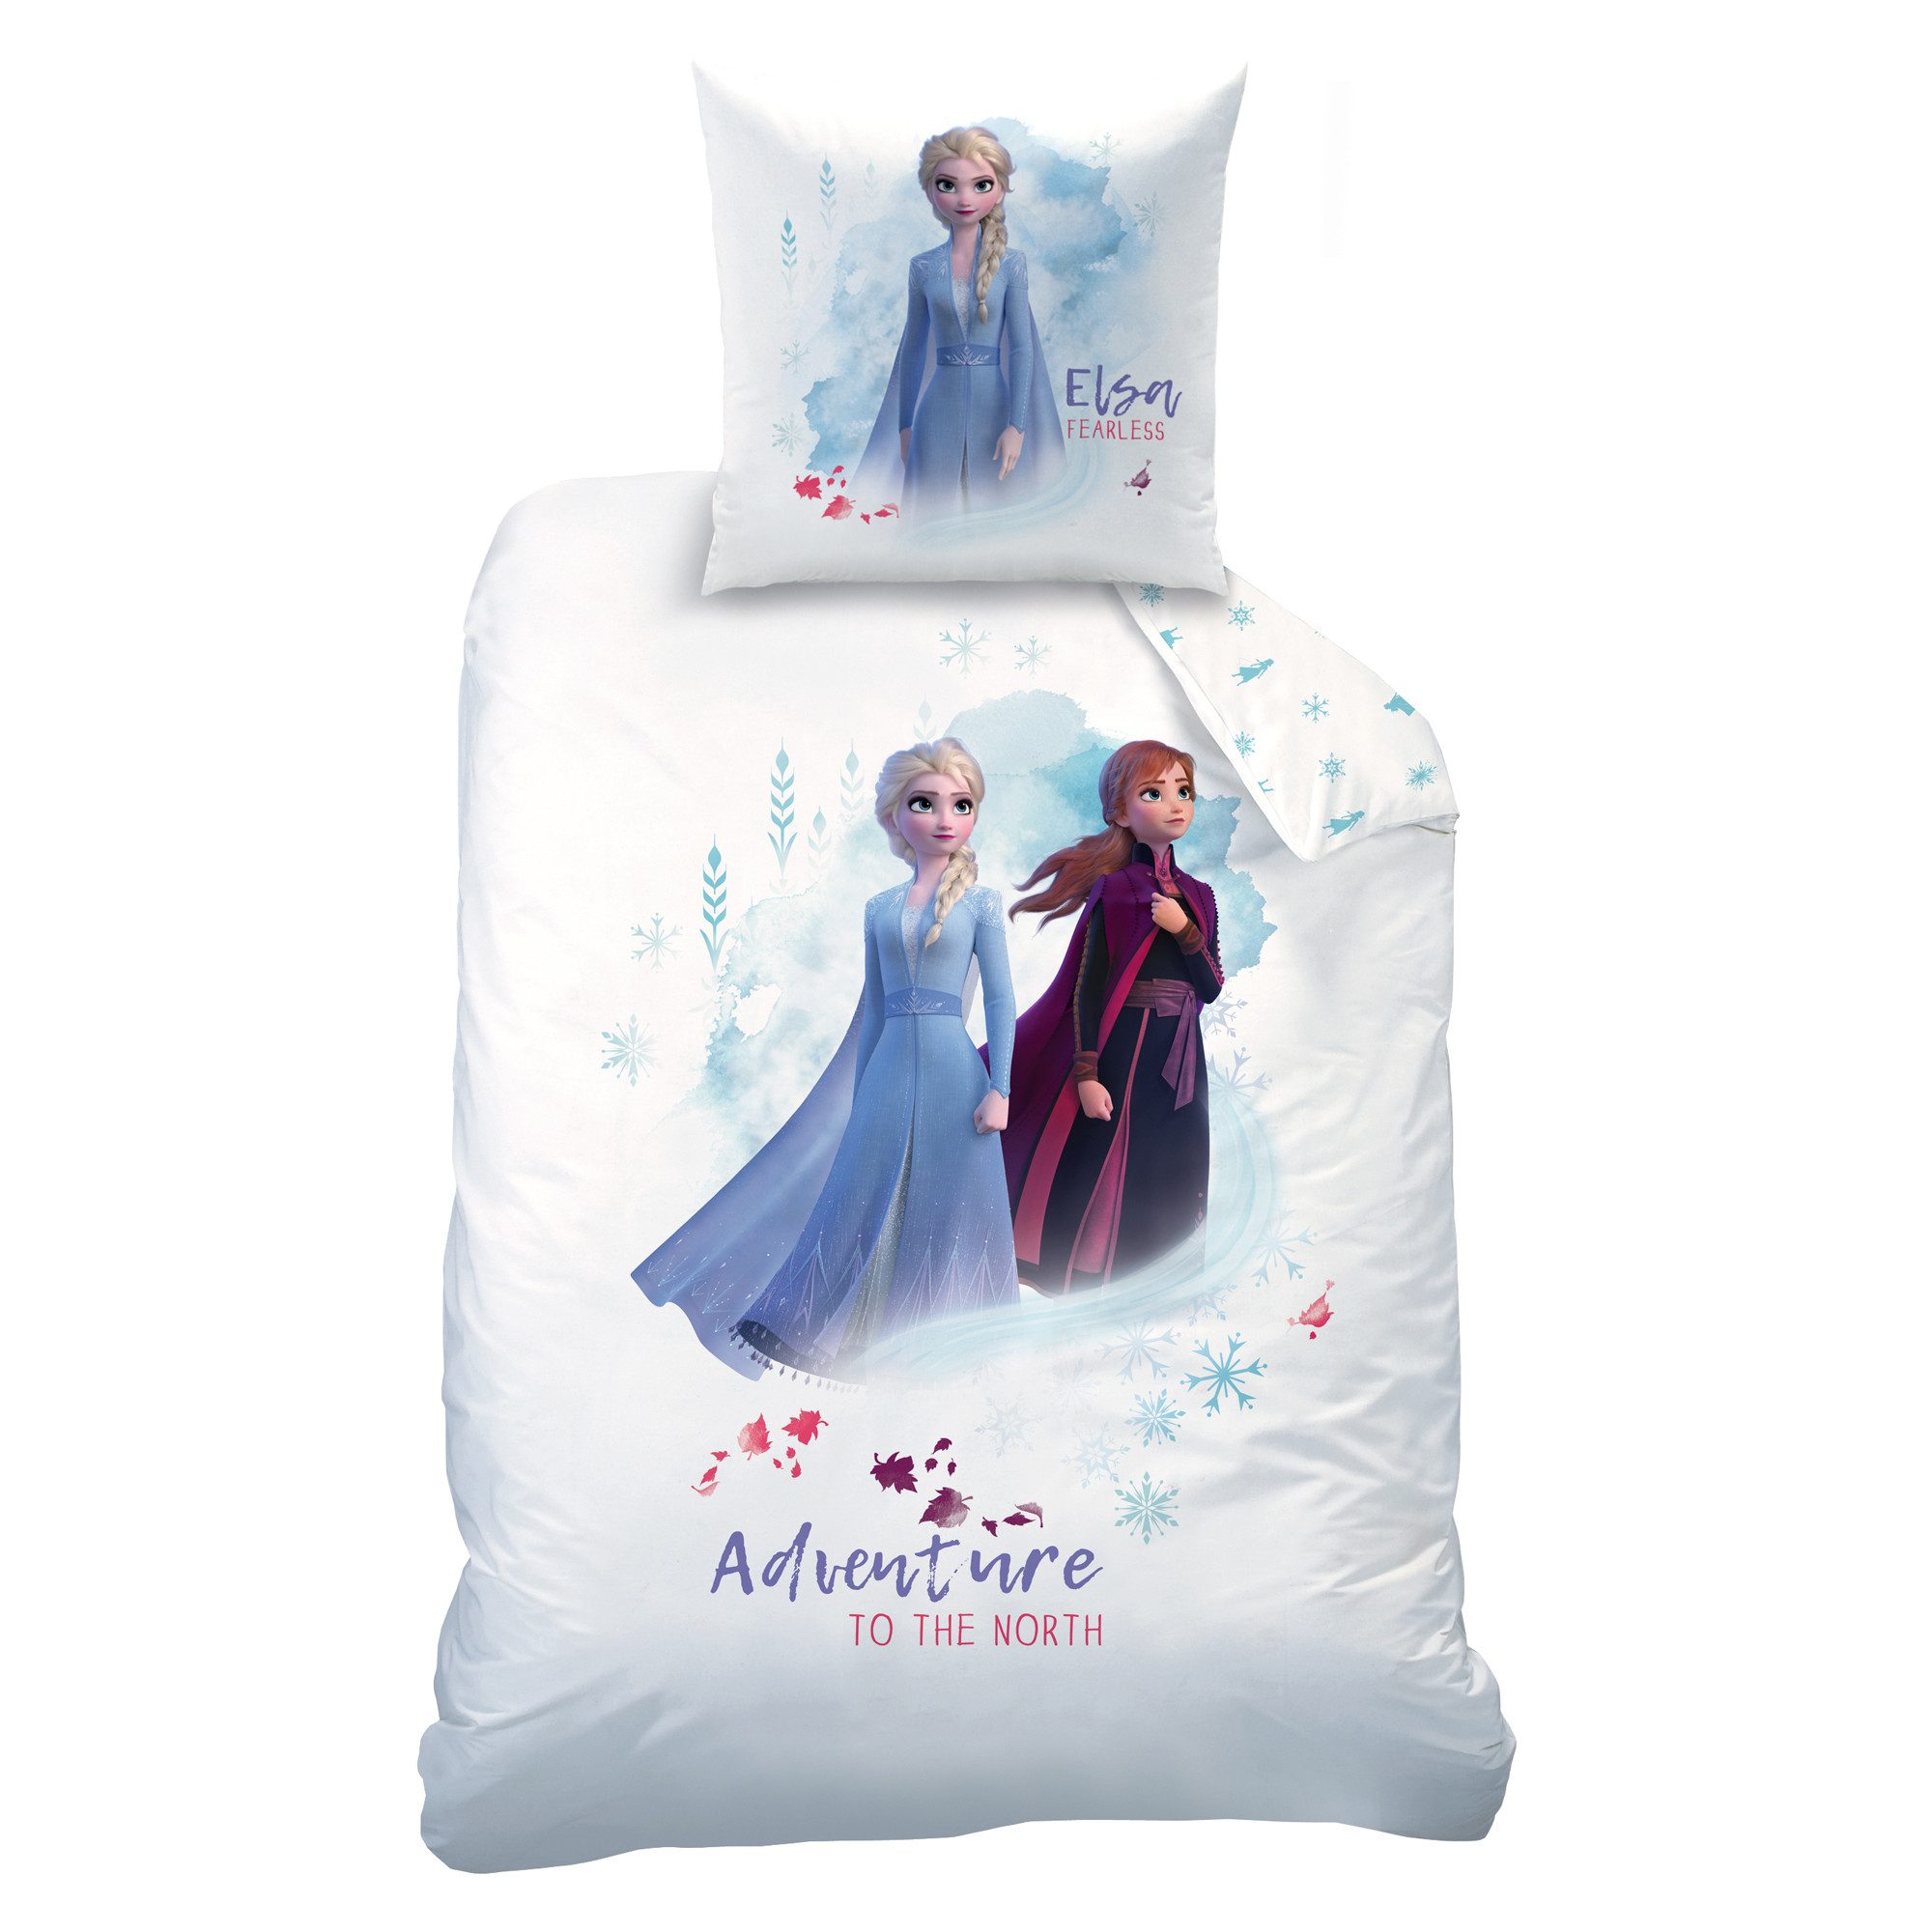 Kinderbettwäsche Frozen 2 Bettwäsche Die Eiskönigin Adventure Linon / Renforcé, BERONAGE, 100% Baumwolle, 2 teilig, 135x200 + 80x80 cm